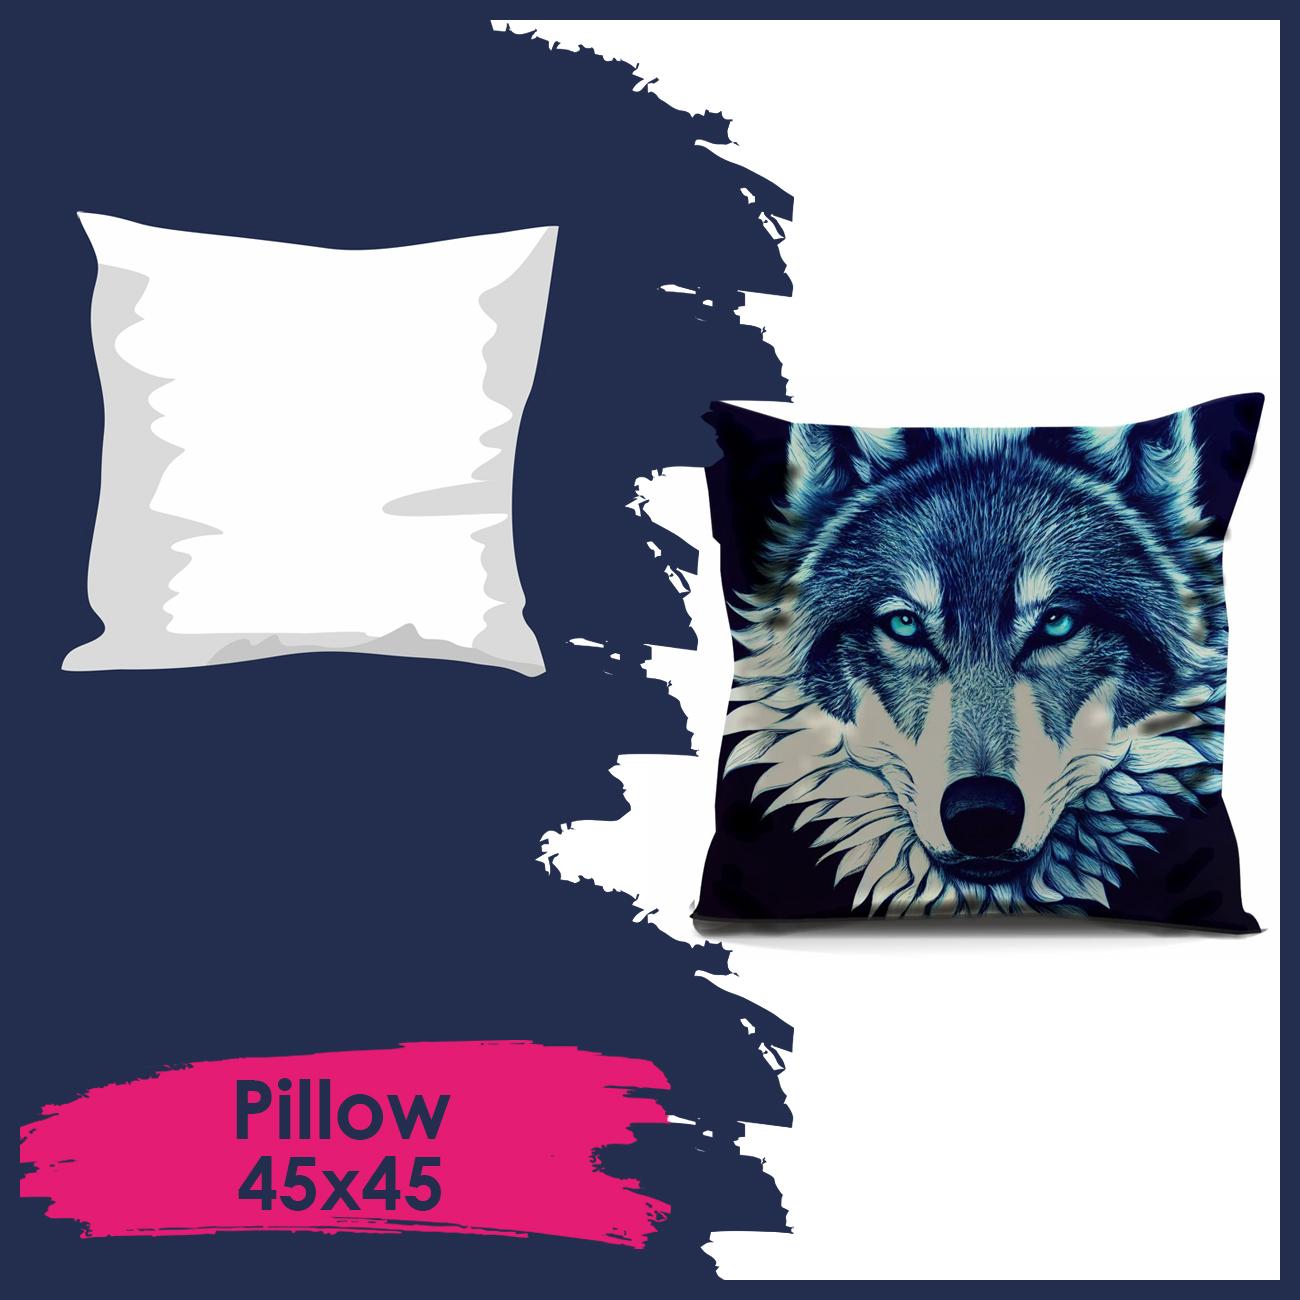 Pillow 45x45